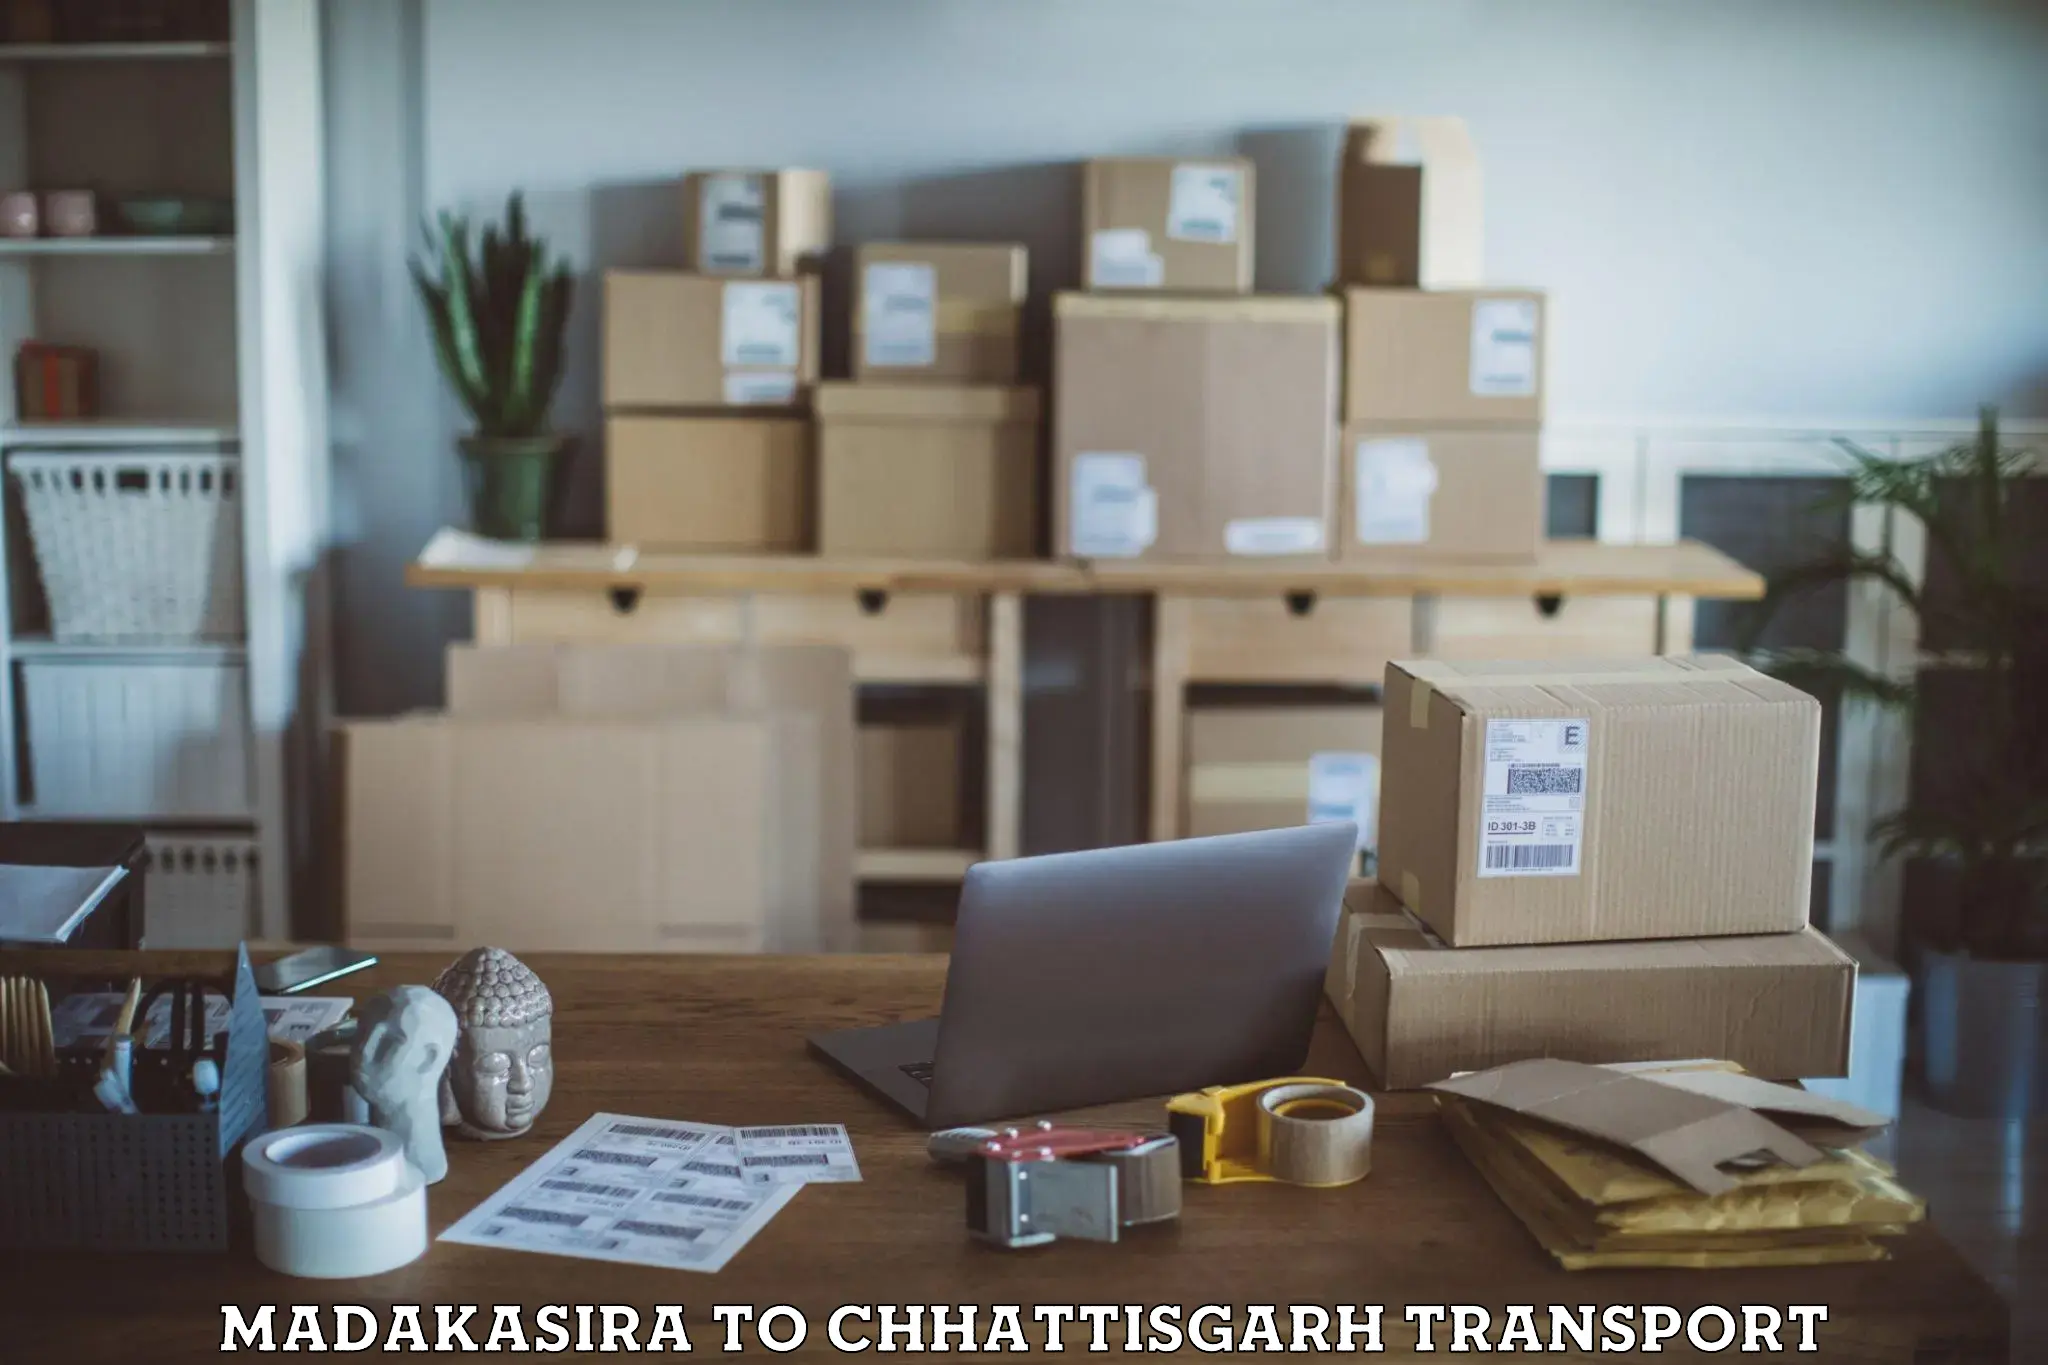 Container transport service Madakasira to Patna Chhattisgarh